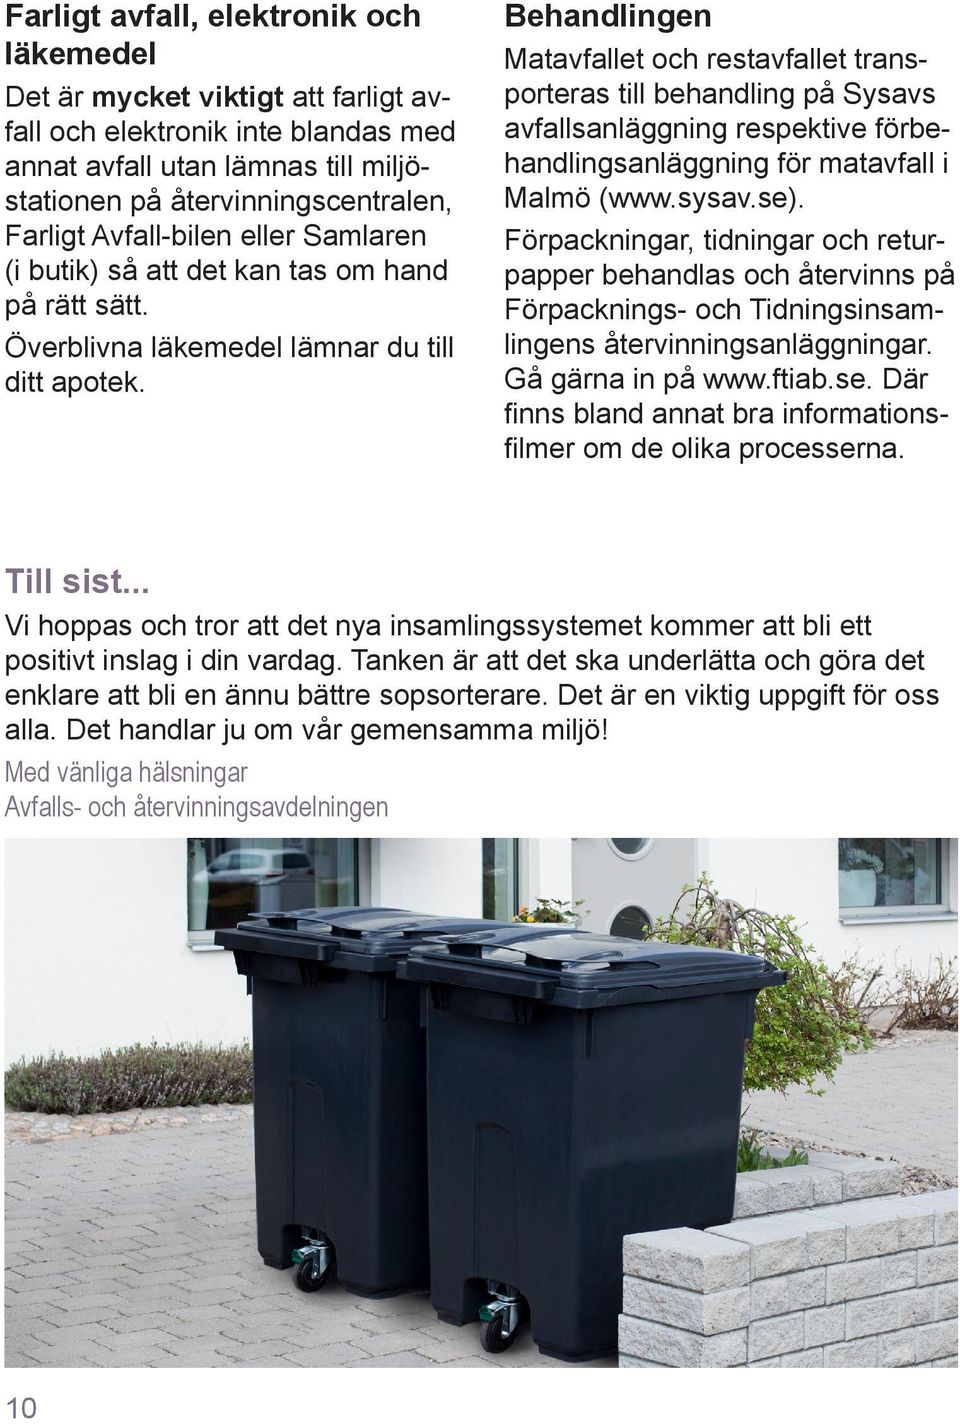 Behandlingen Matavfallet och restavfallet transporteras till behandling på Sysavs avfallsanläggning respektive förbehandlingsanläggning för matavfall i Malmö (www.sysav.se).